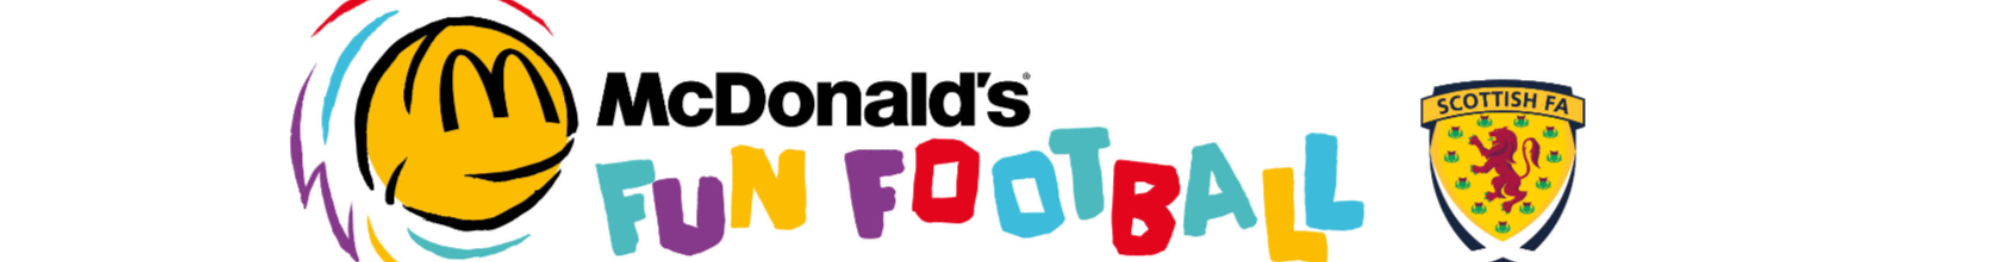 mcdonalds football fun banner1